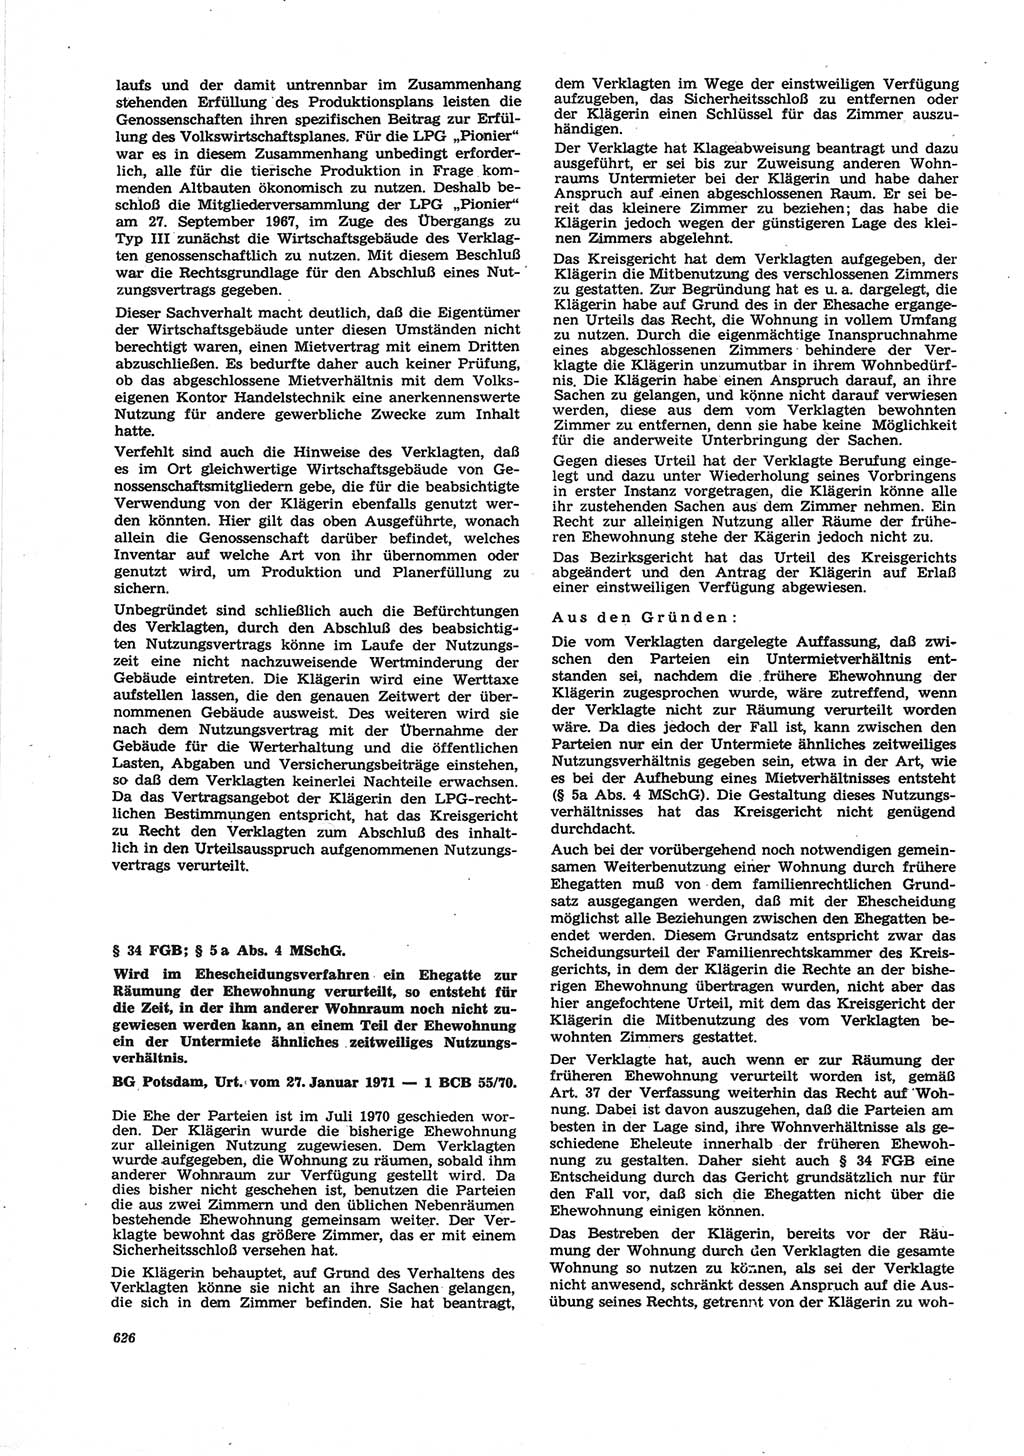 Neue Justiz (NJ), Zeitschrift für Recht und Rechtswissenschaft [Deutsche Demokratische Republik (DDR)], 25. Jahrgang 1971, Seite 626 (NJ DDR 1971, S. 626)